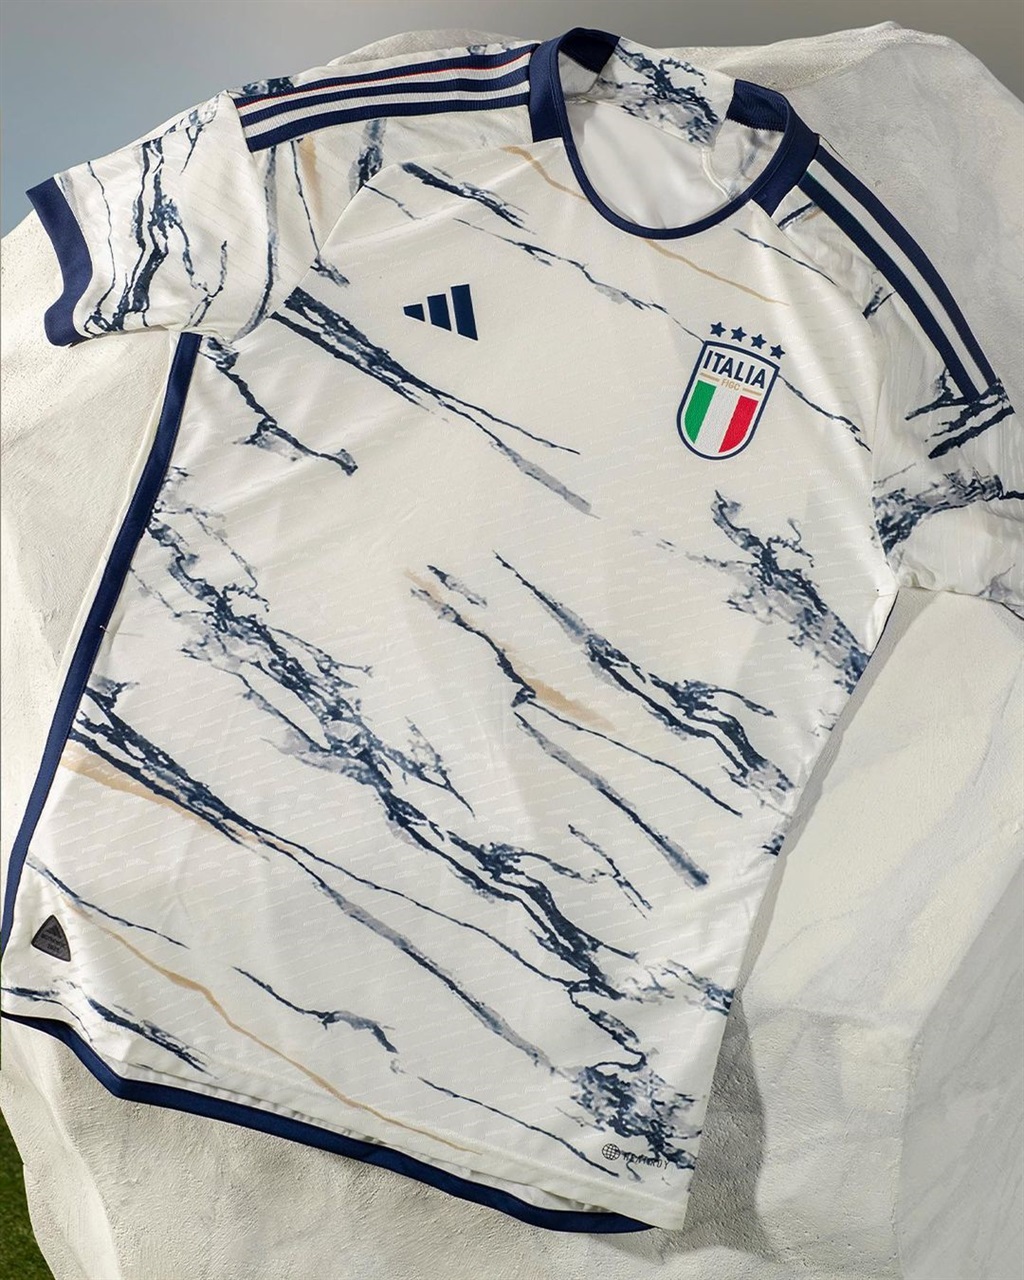 Italy's new adidas away kit.